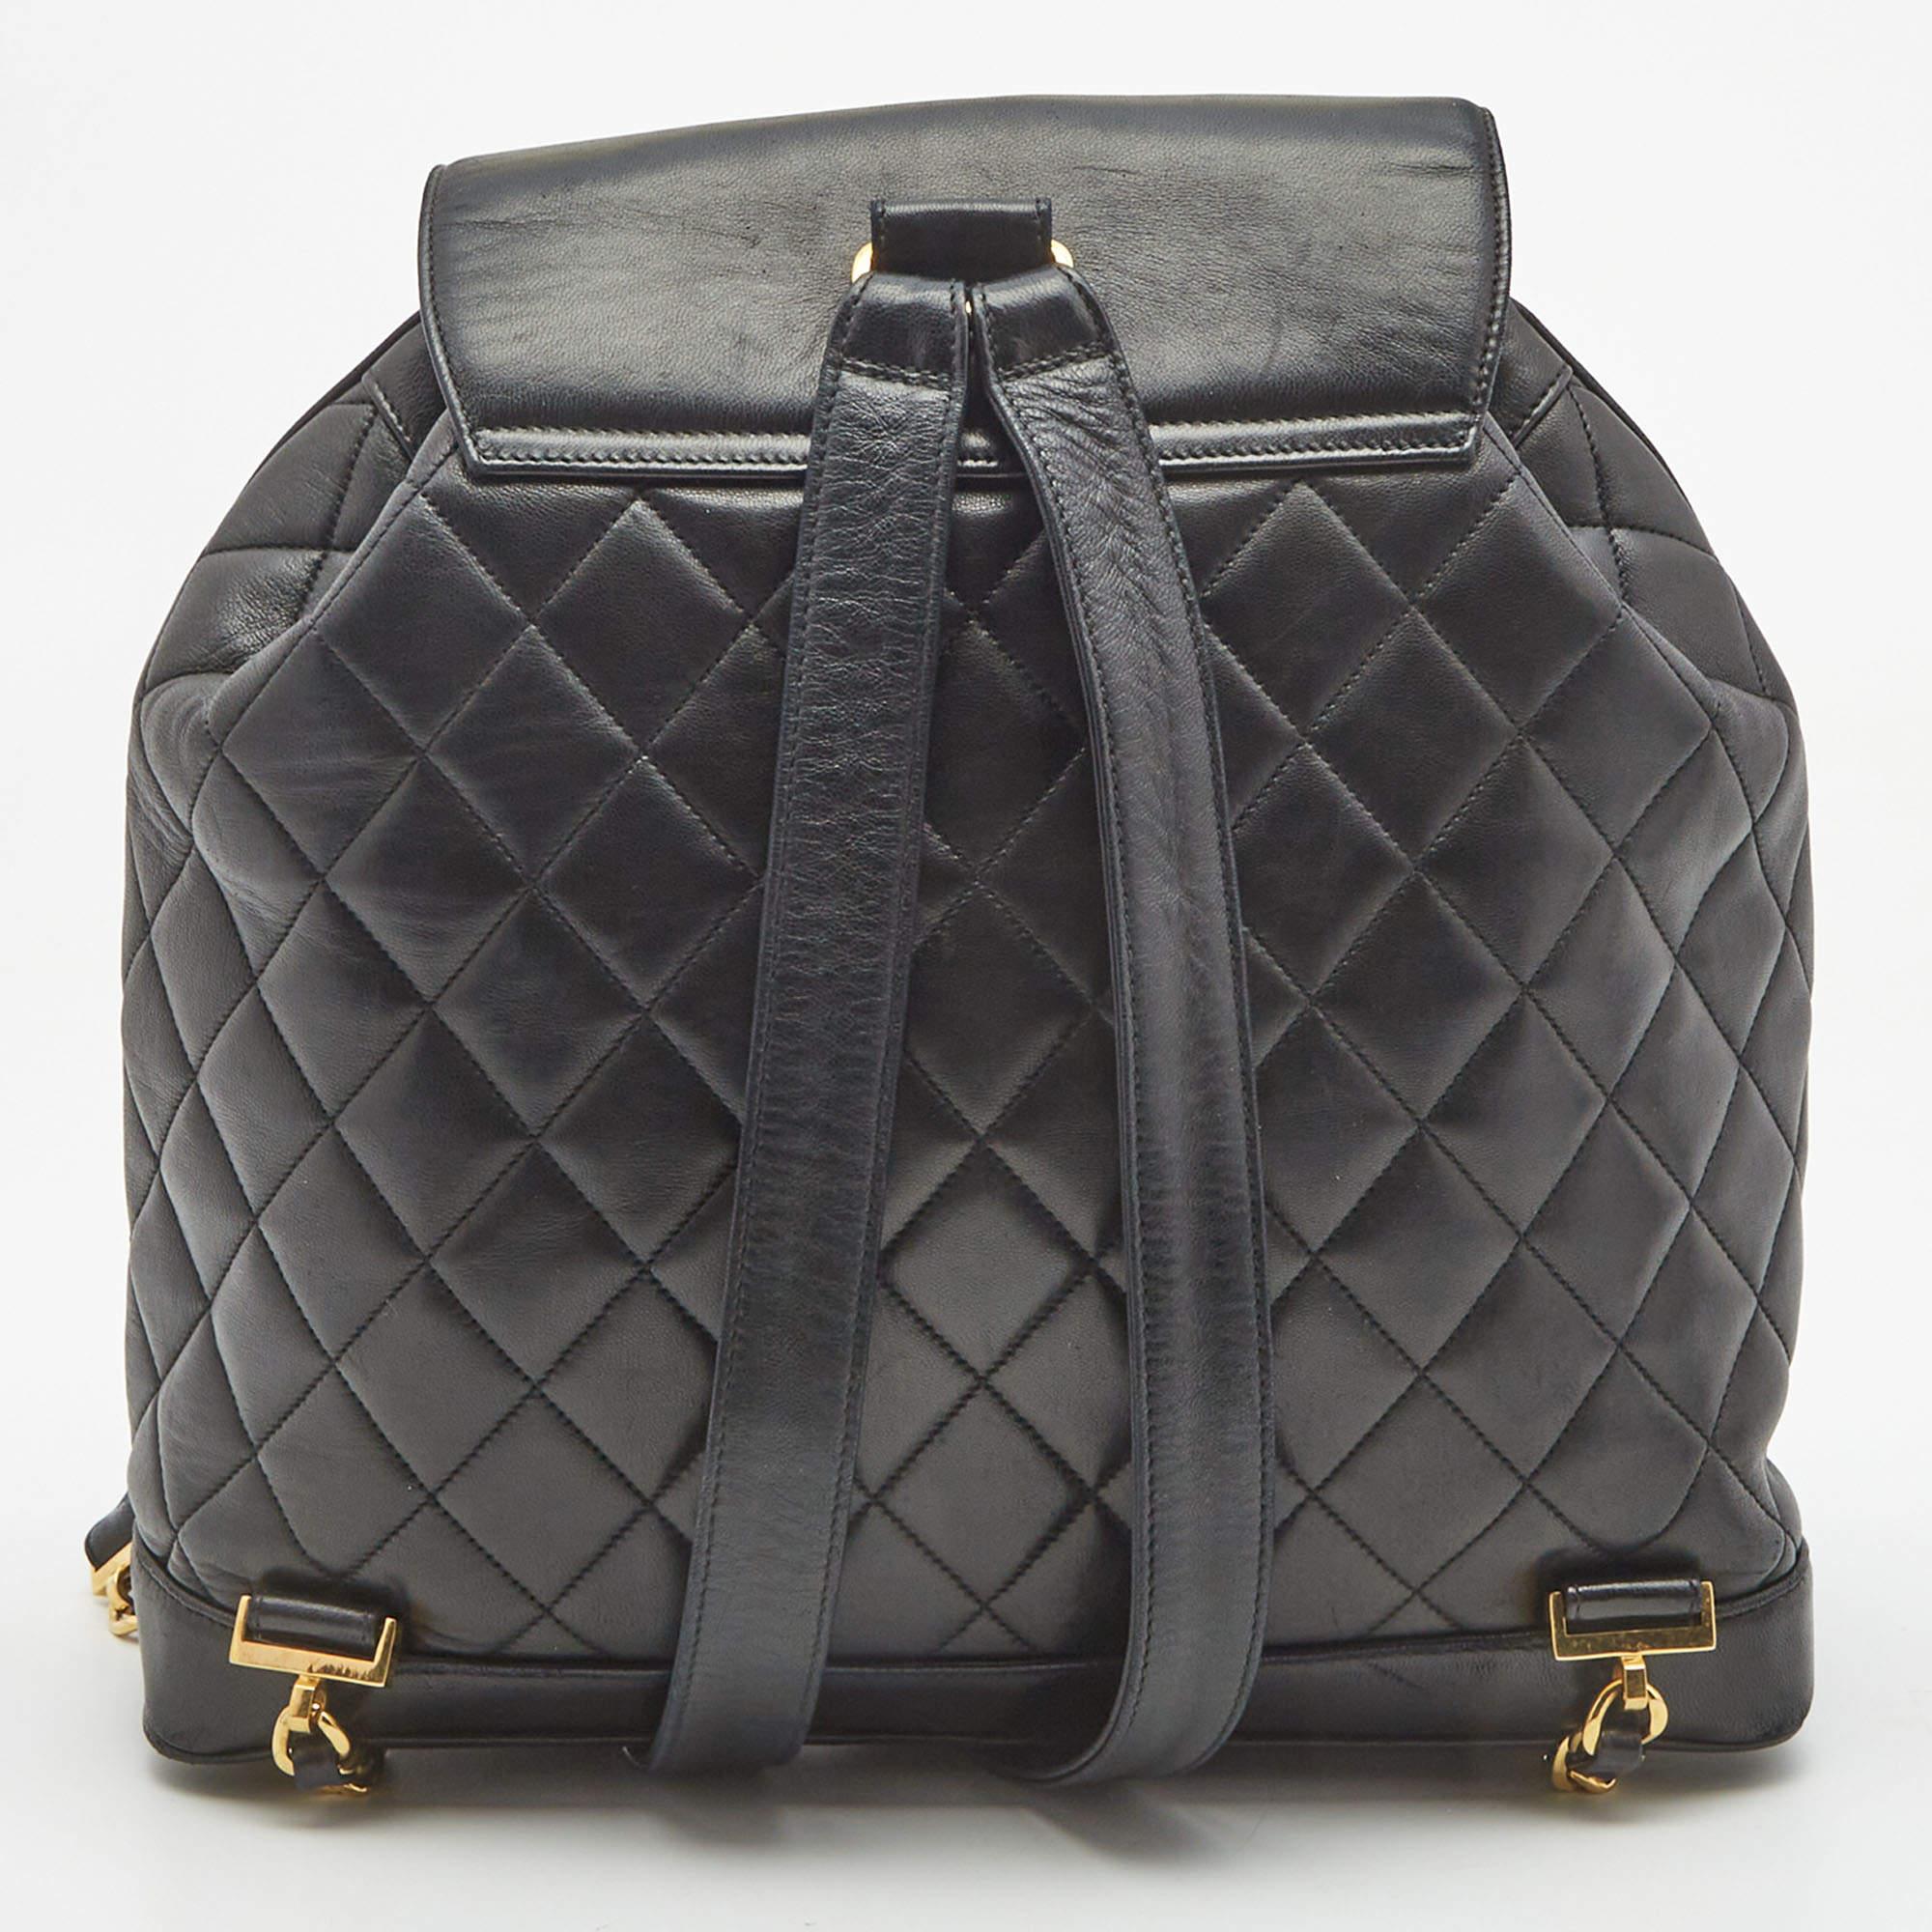 Marqué par une fabrication impeccable et un attrait durable, ce sac à dos vintage Chanel pour femme est voué à être un accessoire polyvalent et durable. Il a une taille spacieuse.

Comprend : Sac à poussière original